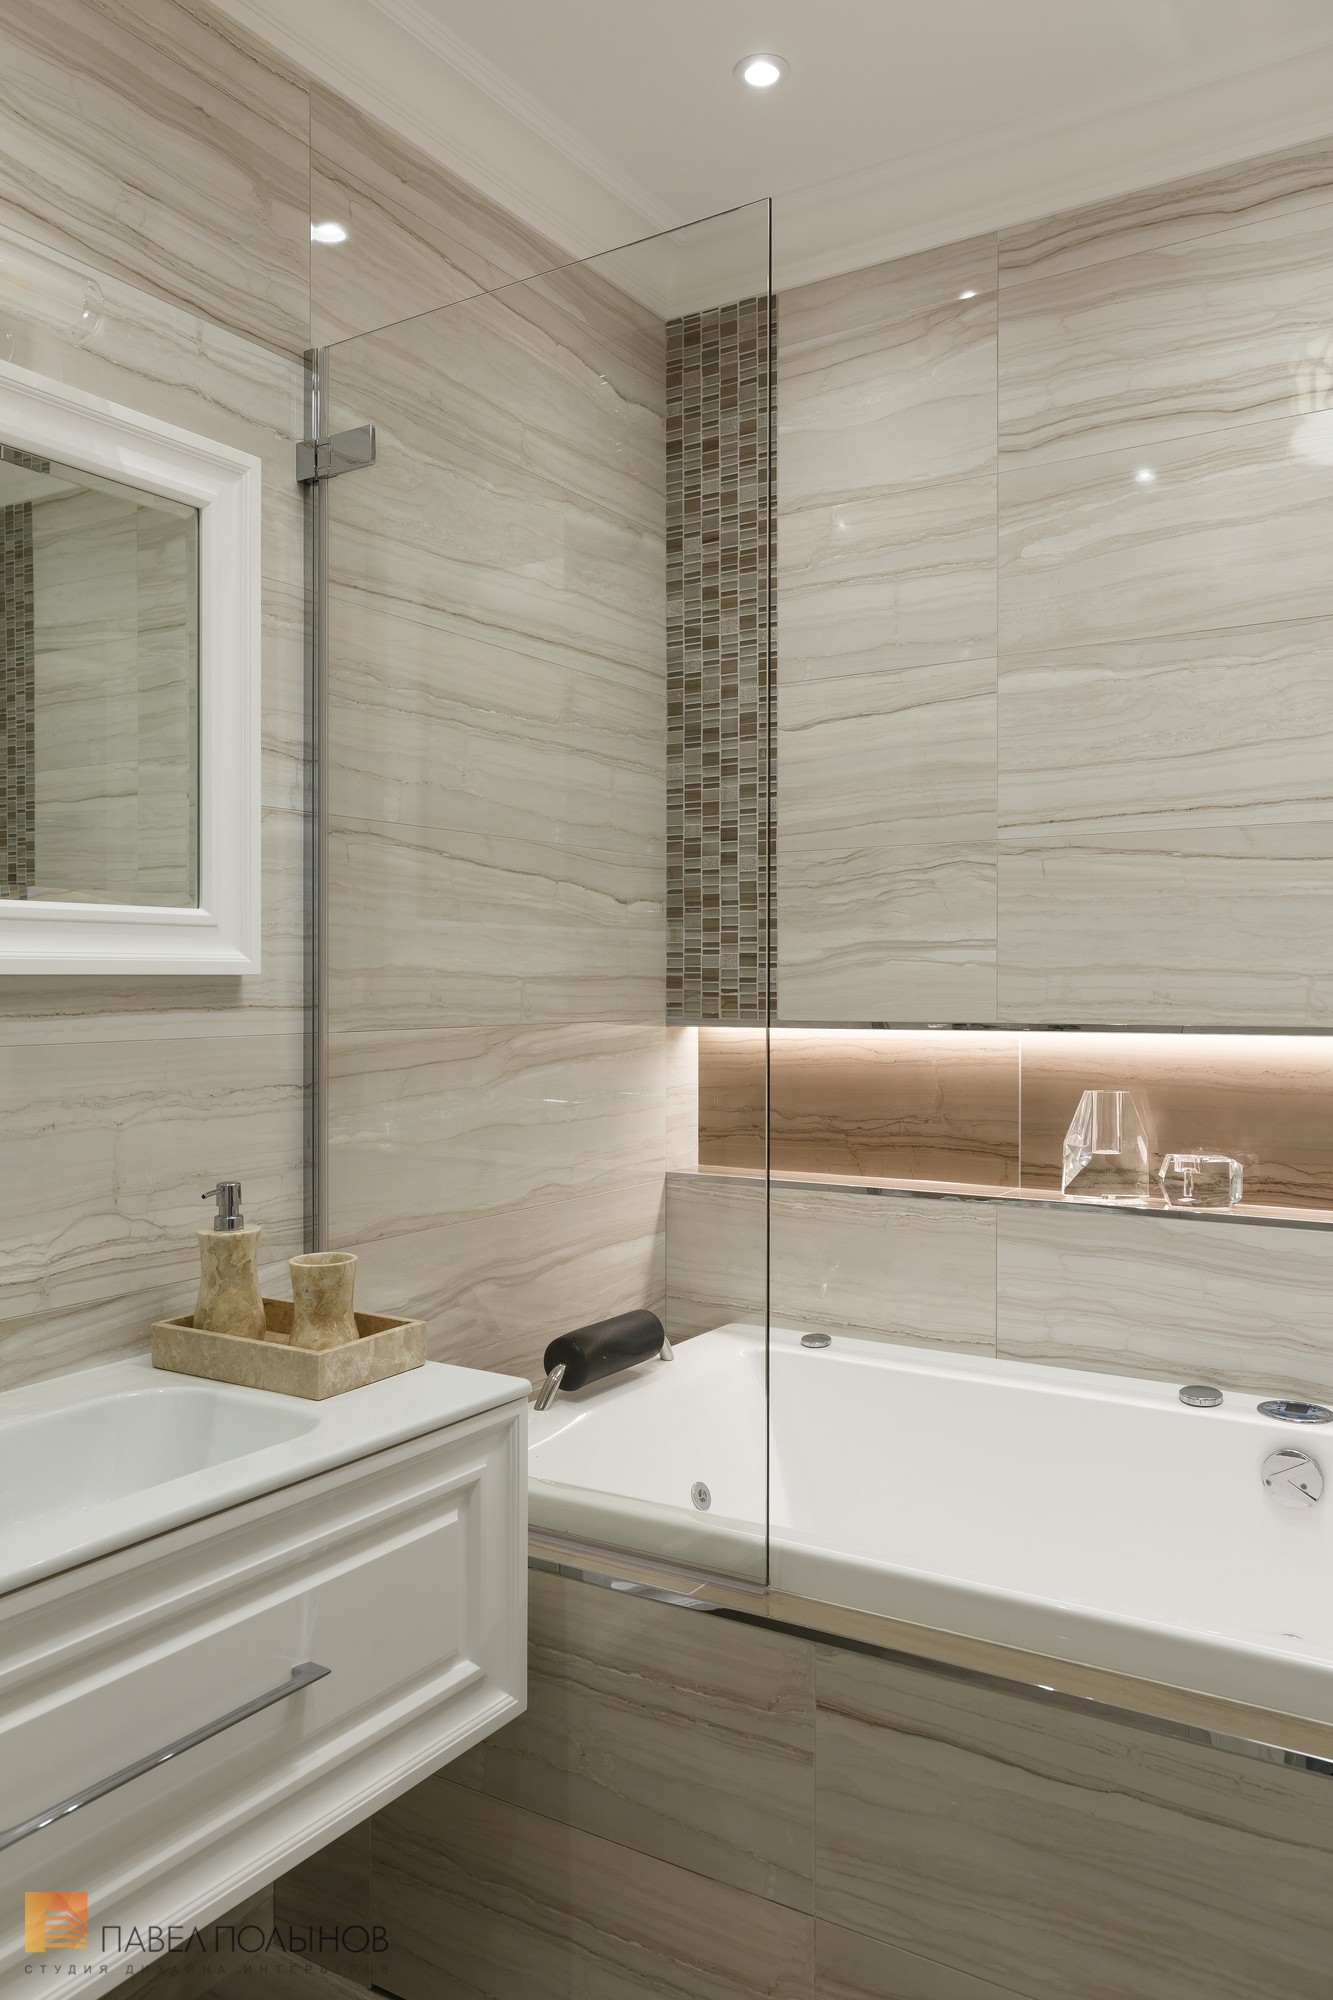 Фото ремонт ванной комнаты из проекта «Отделка квартиры по дизайн-проекту, ЖК «Академ-Парк», 107 кв.м.»